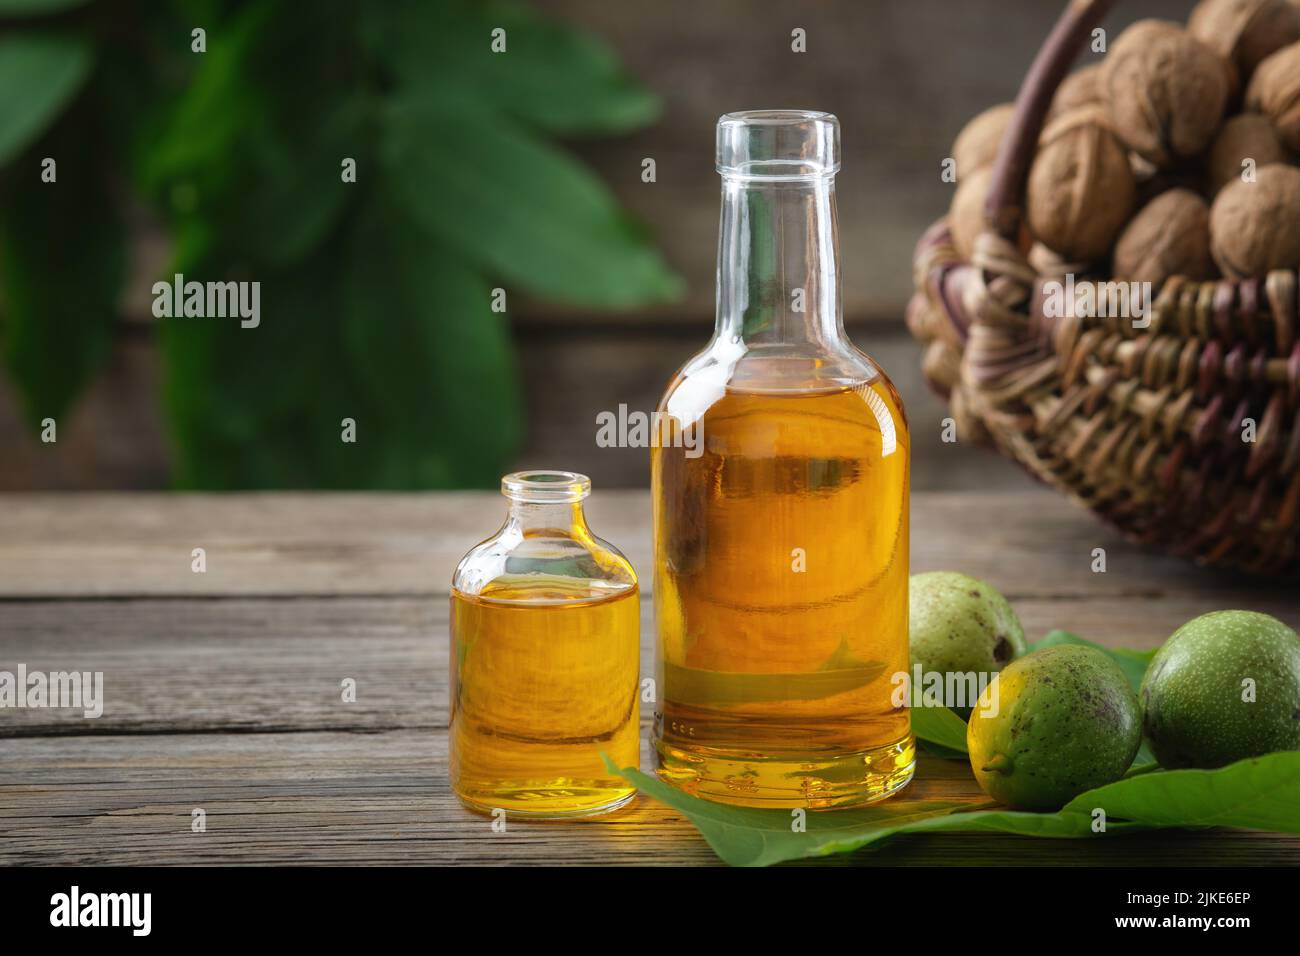 Botellas de aceite esencial de nuez, nueces verdes y maduras. Cesta de frutos secos en el fondo. Foto de stock